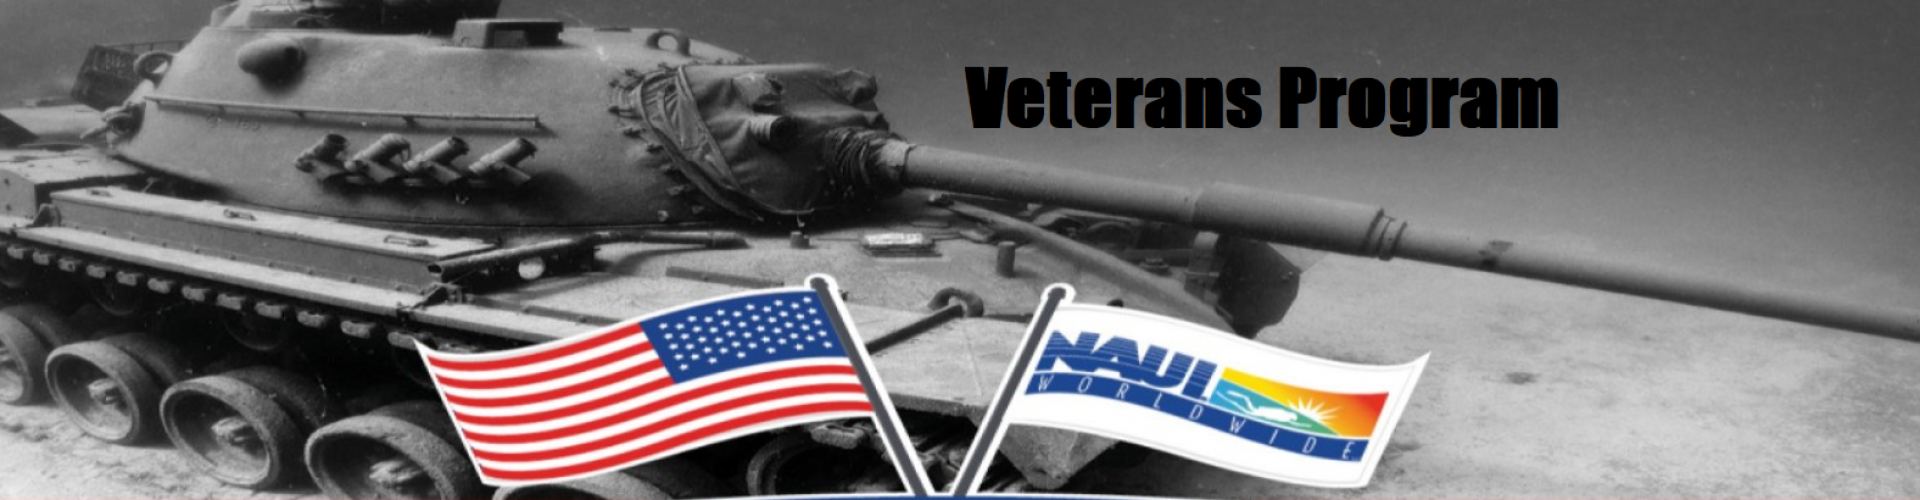 Veterans program